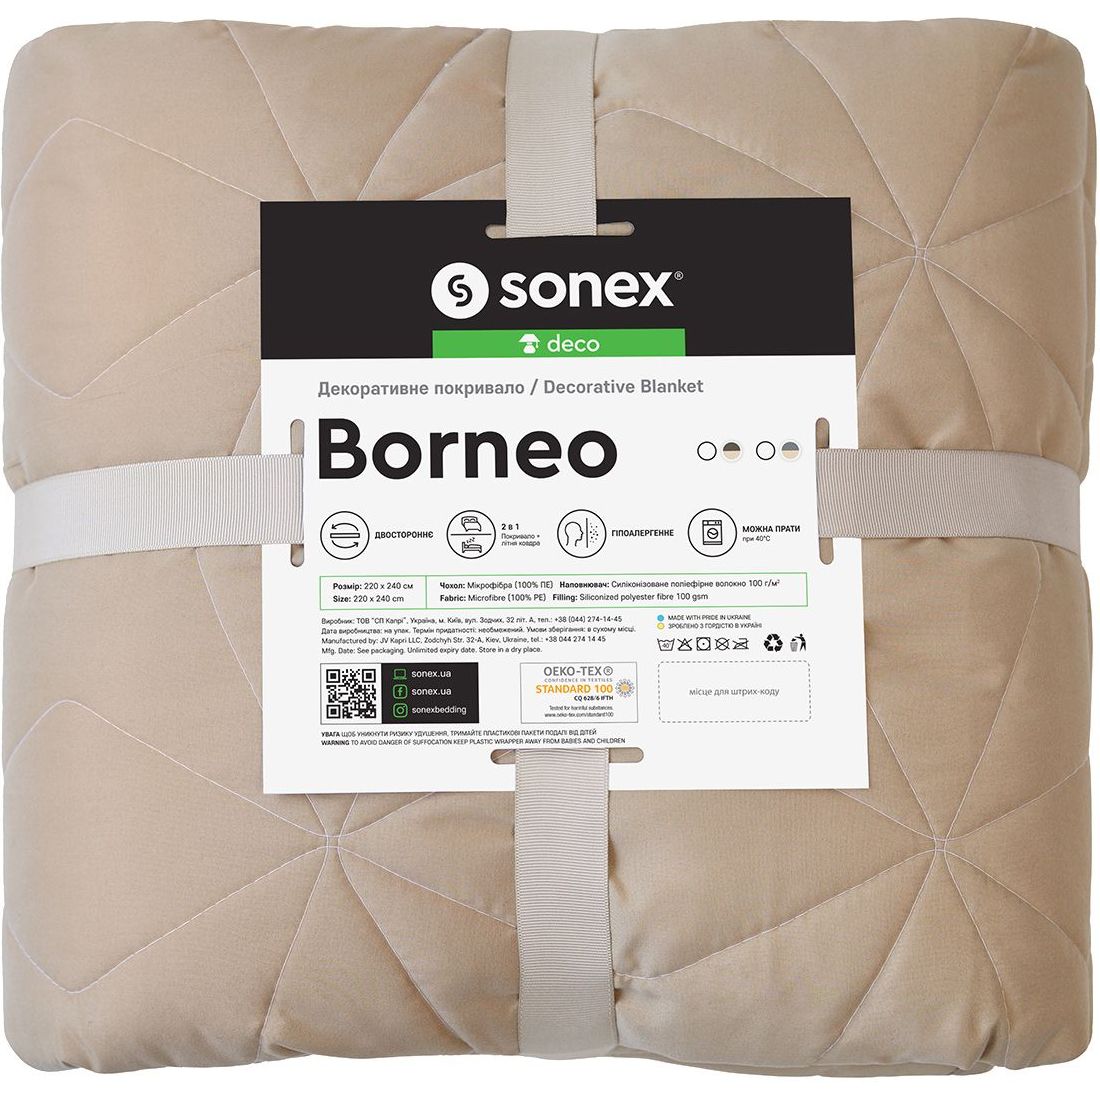 Декоративное покрывало Sonex Borneo 220х240 см коричневое с бежевым (SO102400) - фото 10